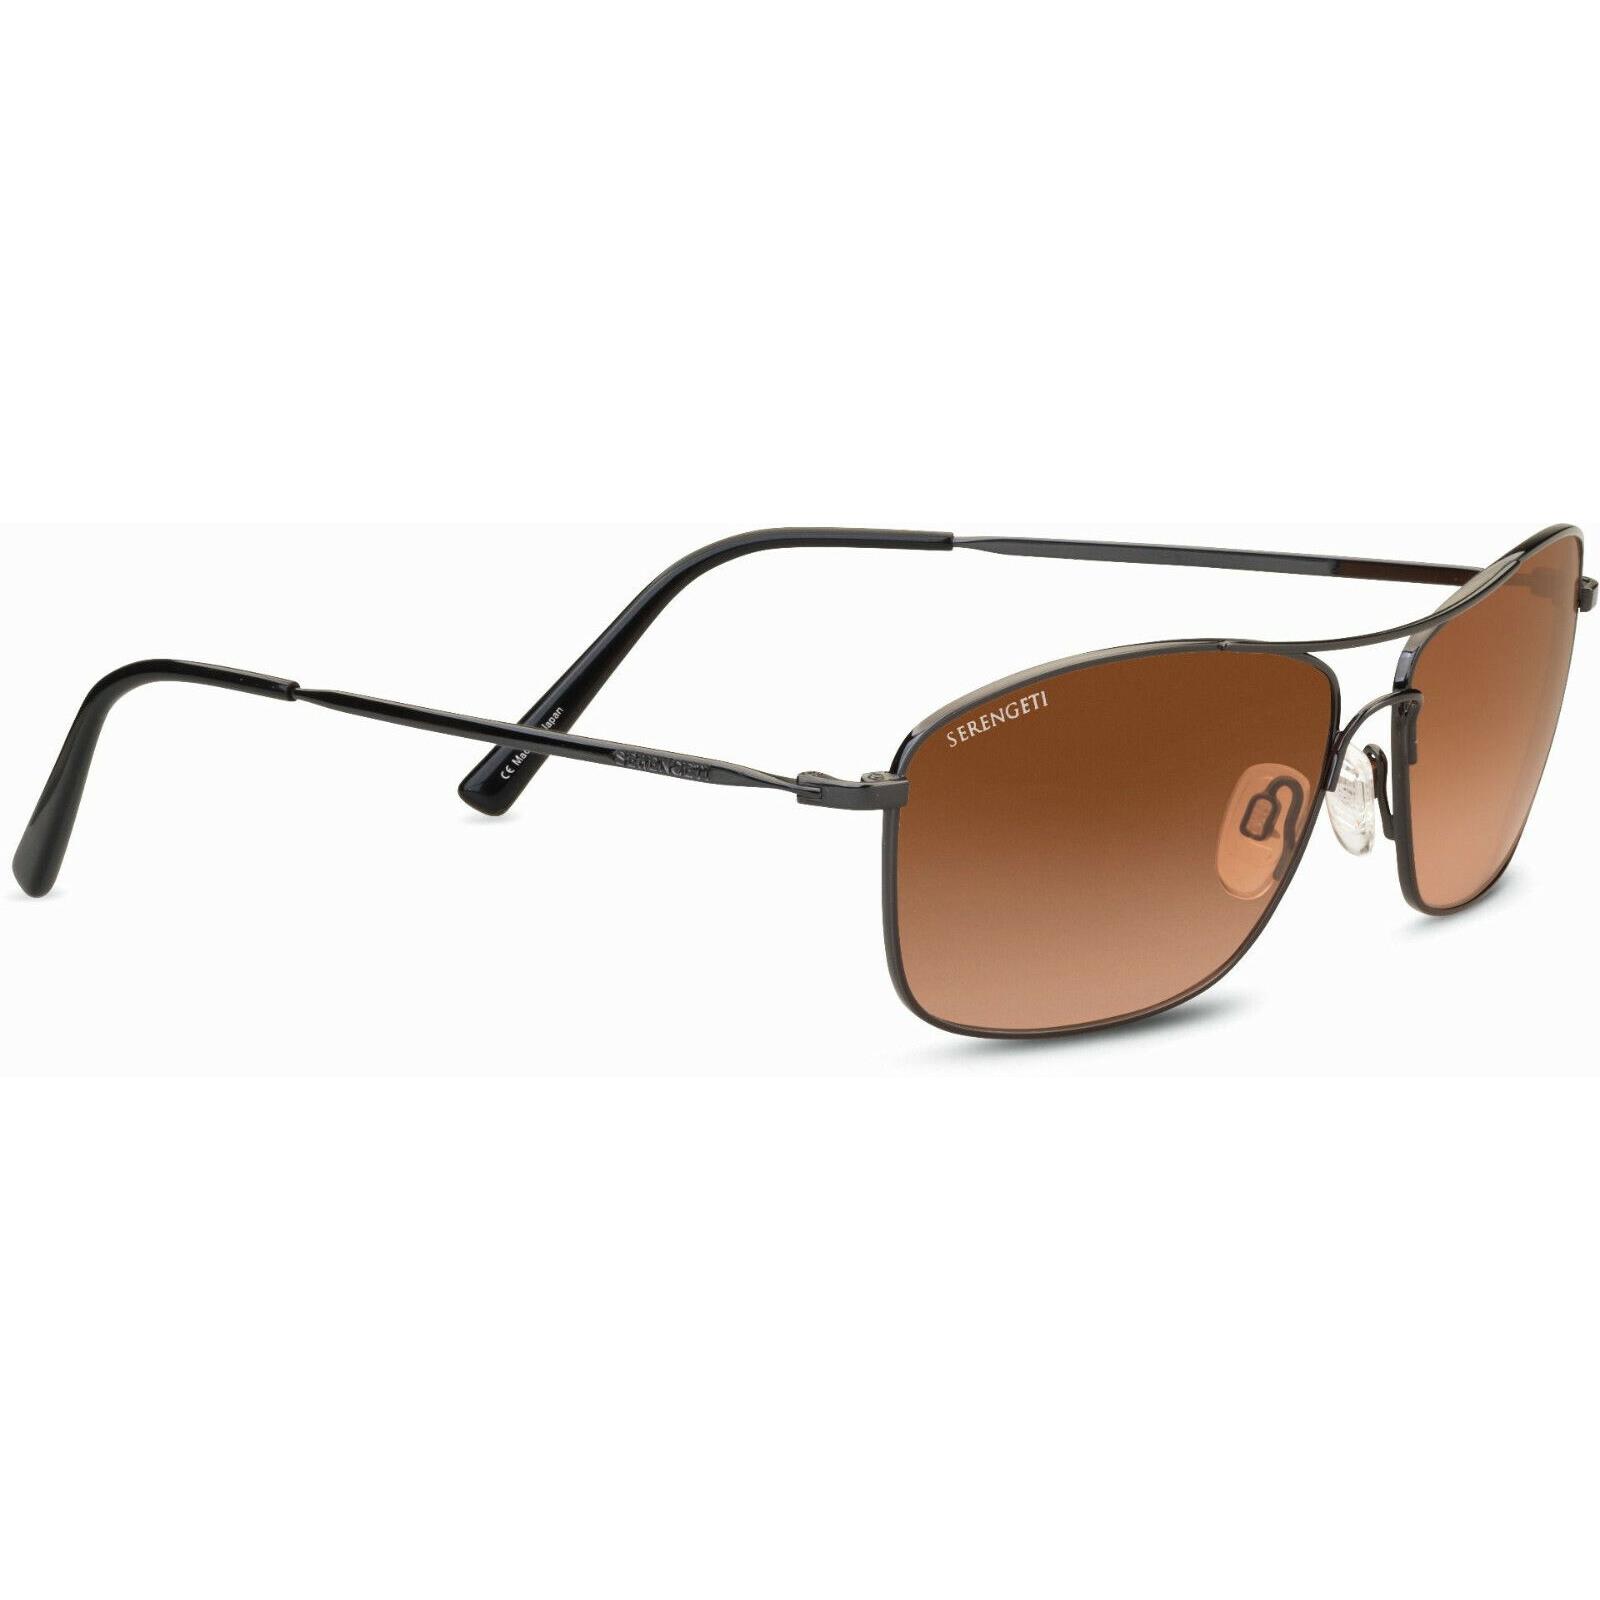 Serengeti Corleone Sunglasses - Photochromic Glass Lenses